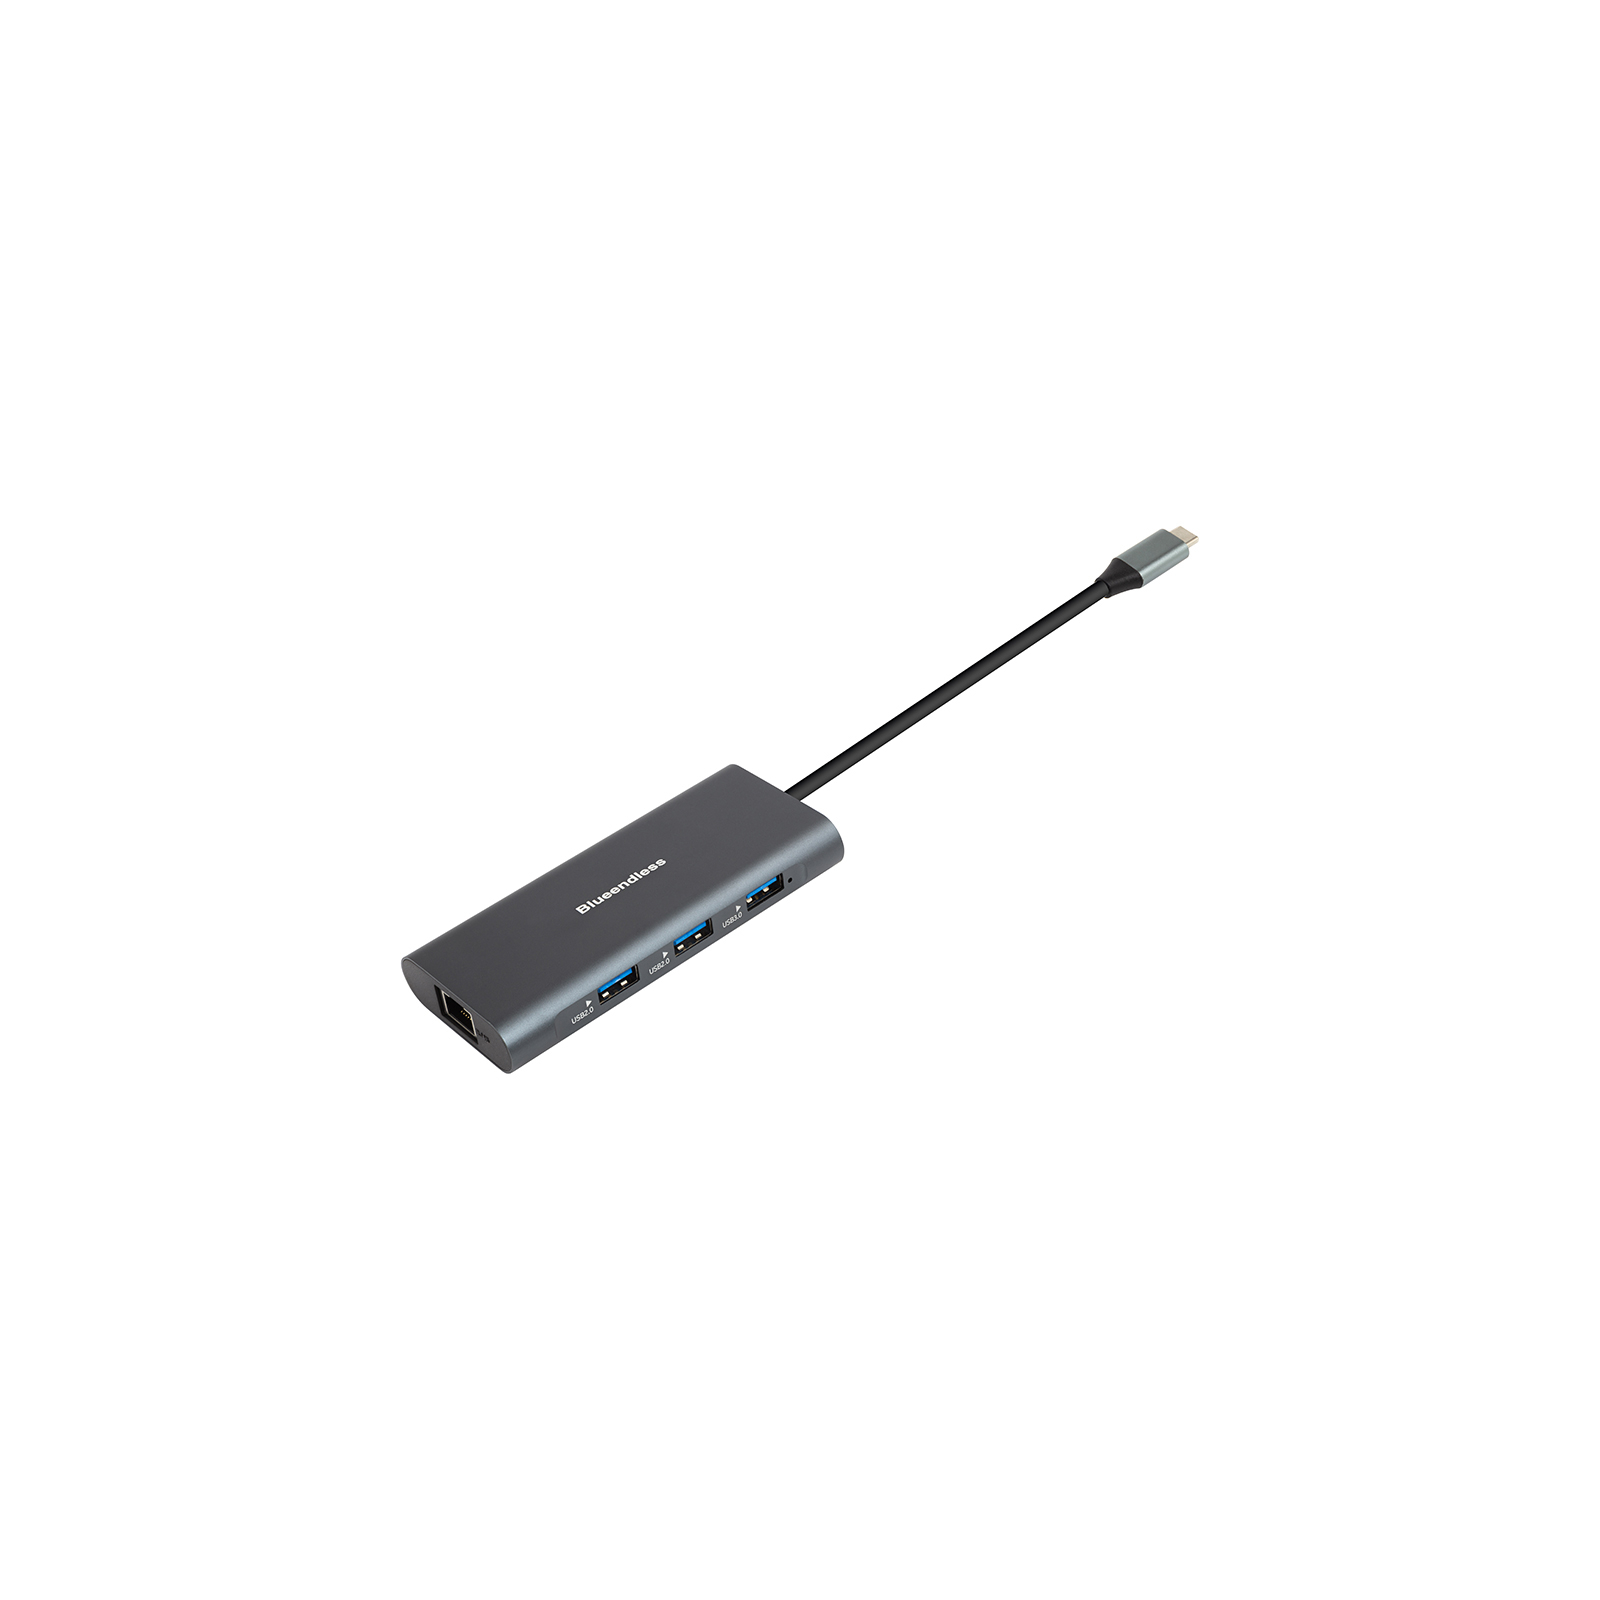 Концентратор PowerPlant USB-C to 2xUSB 3.0, 1xUSB 2.0, 1xType-C (PD), HDMI, SD, RJ45 (CA913497) зображення 4